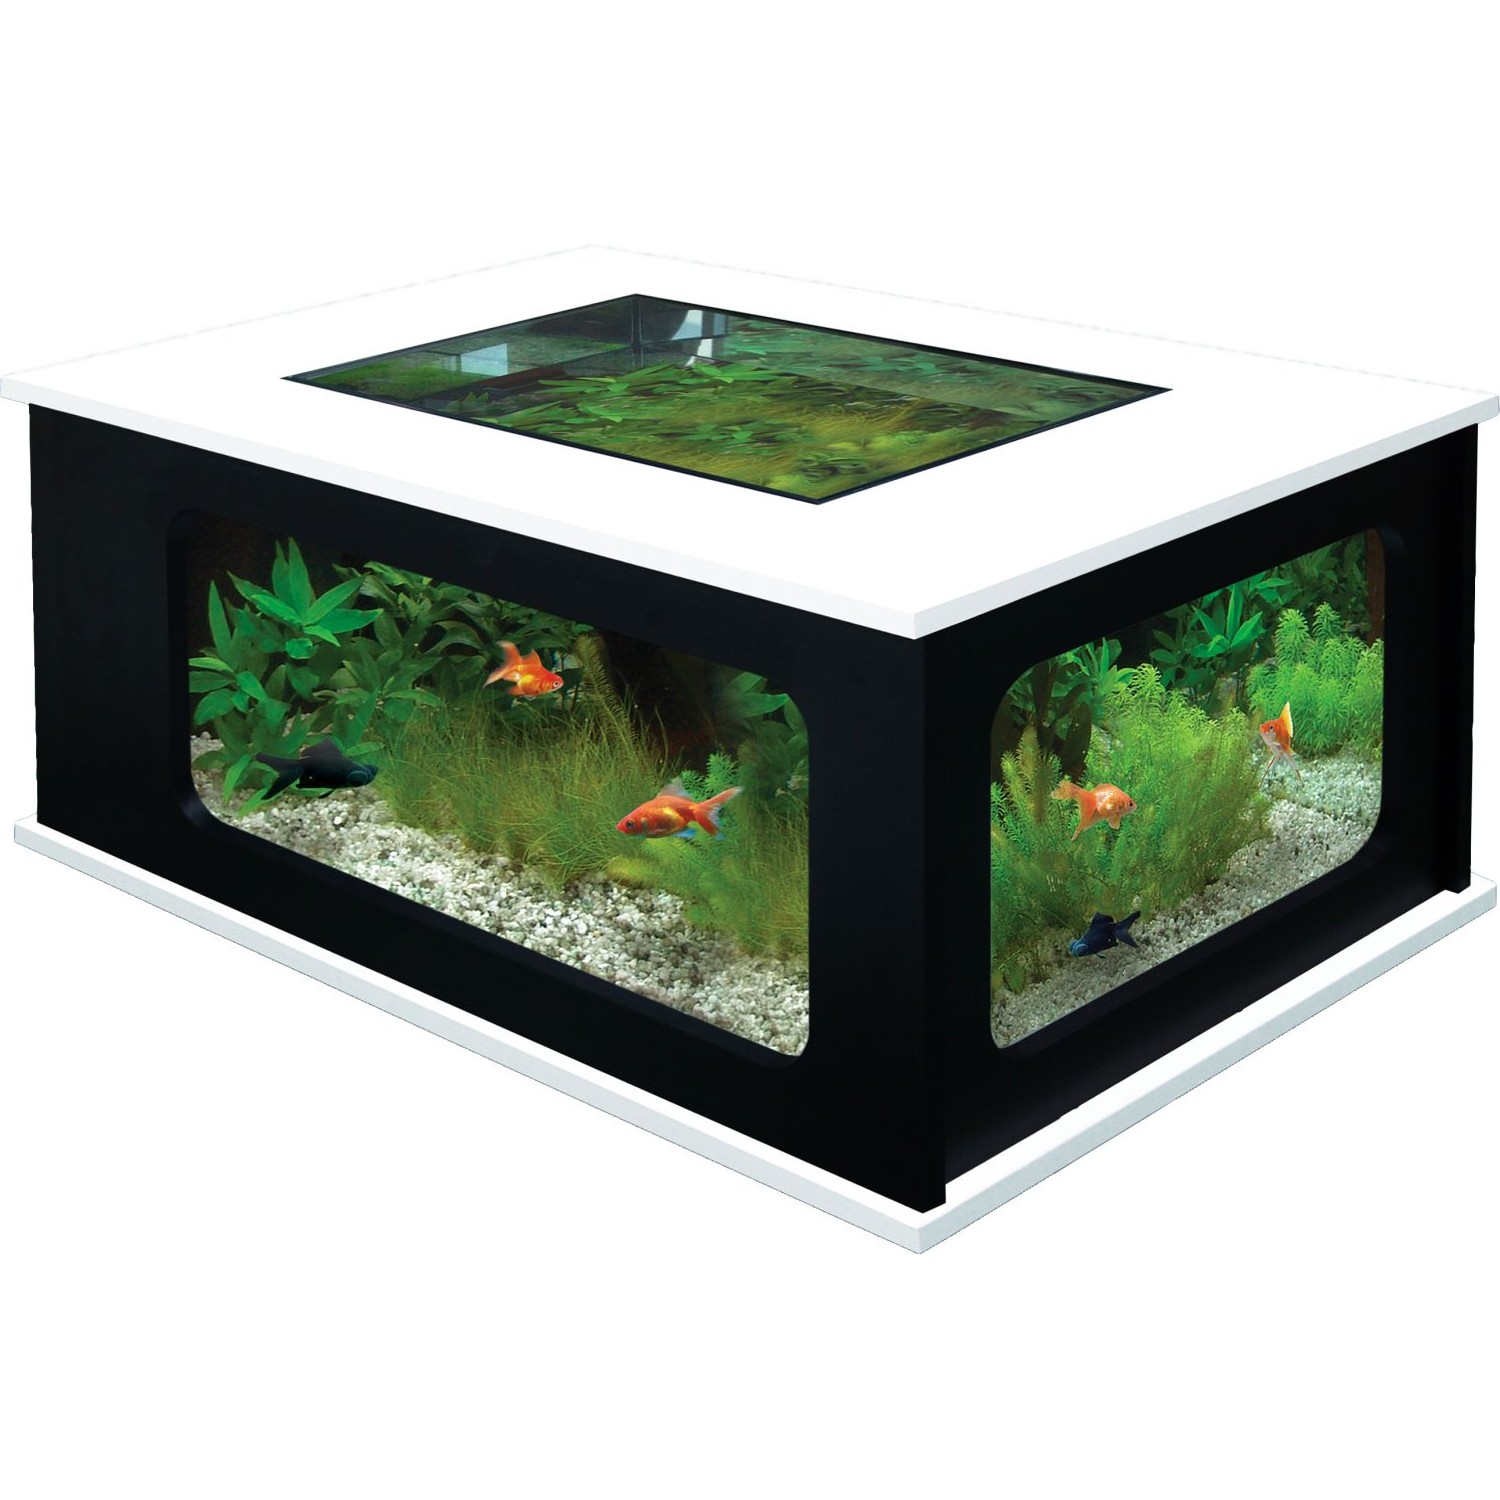 Table basse aquarium acheter